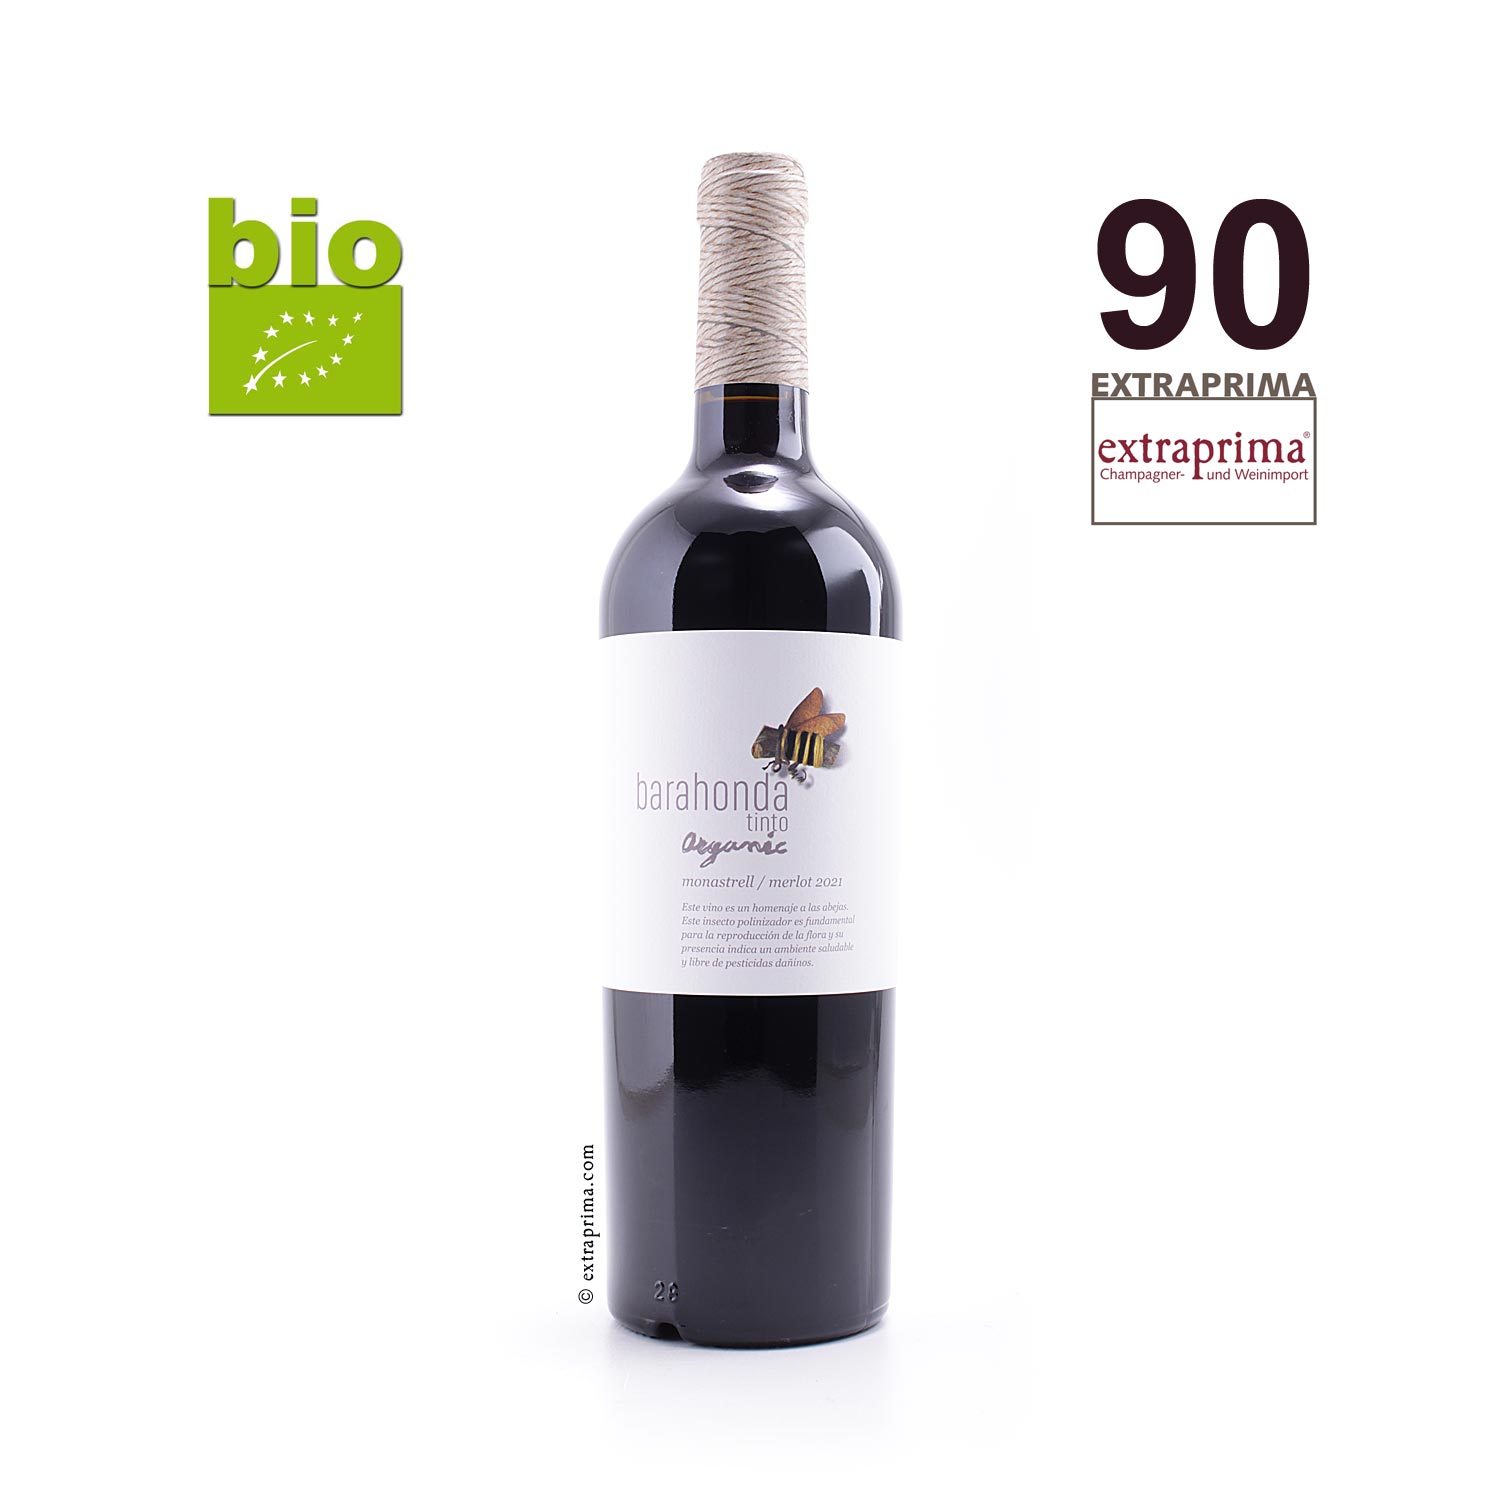 2021 Yecla Organic Monastrell-Merlot - Barahonda | Extraprima Weinversand